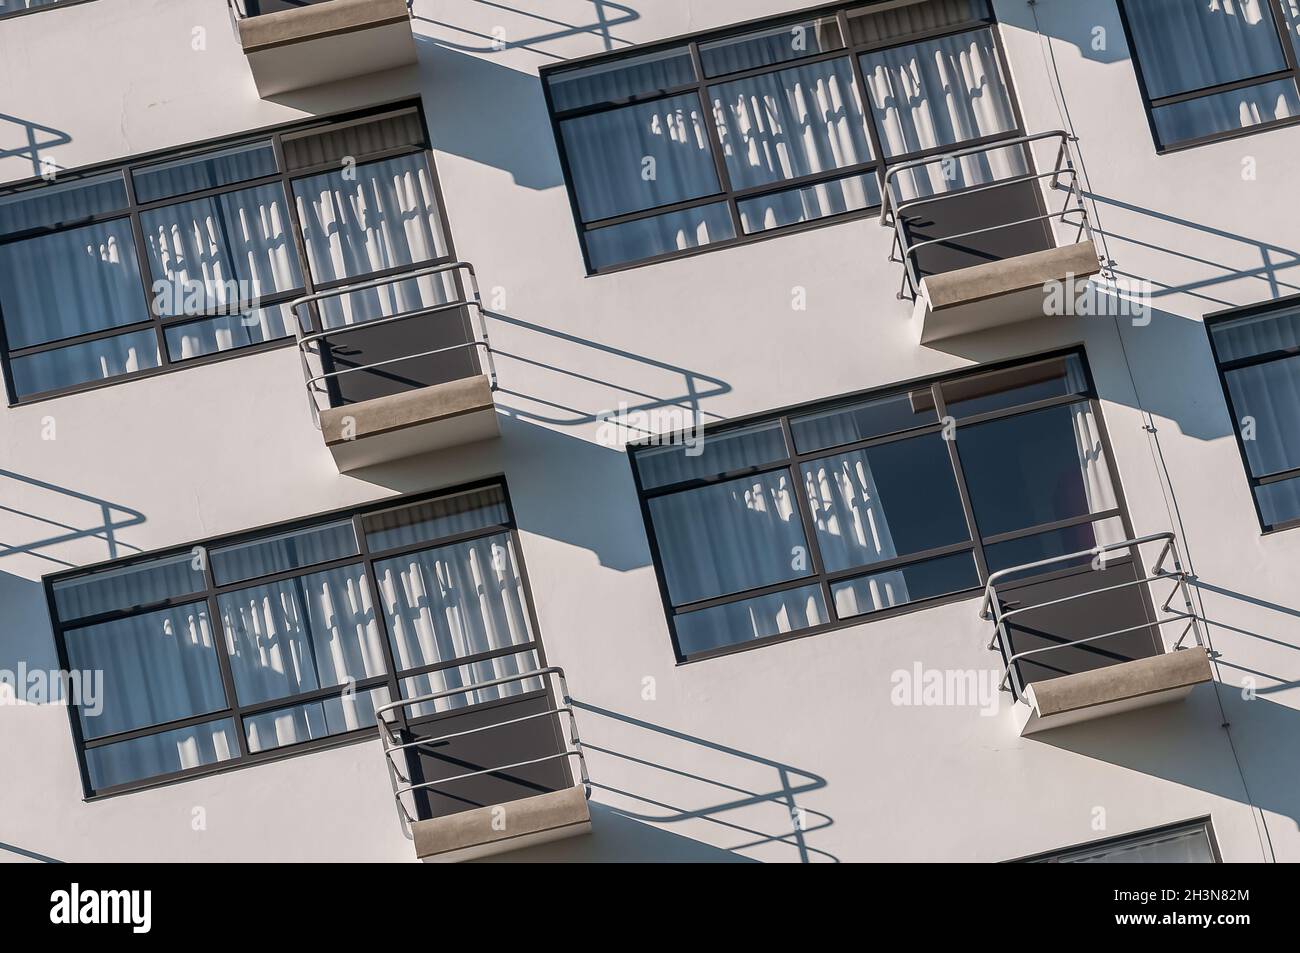 Bauhaus Dessau balcony Stock Photo